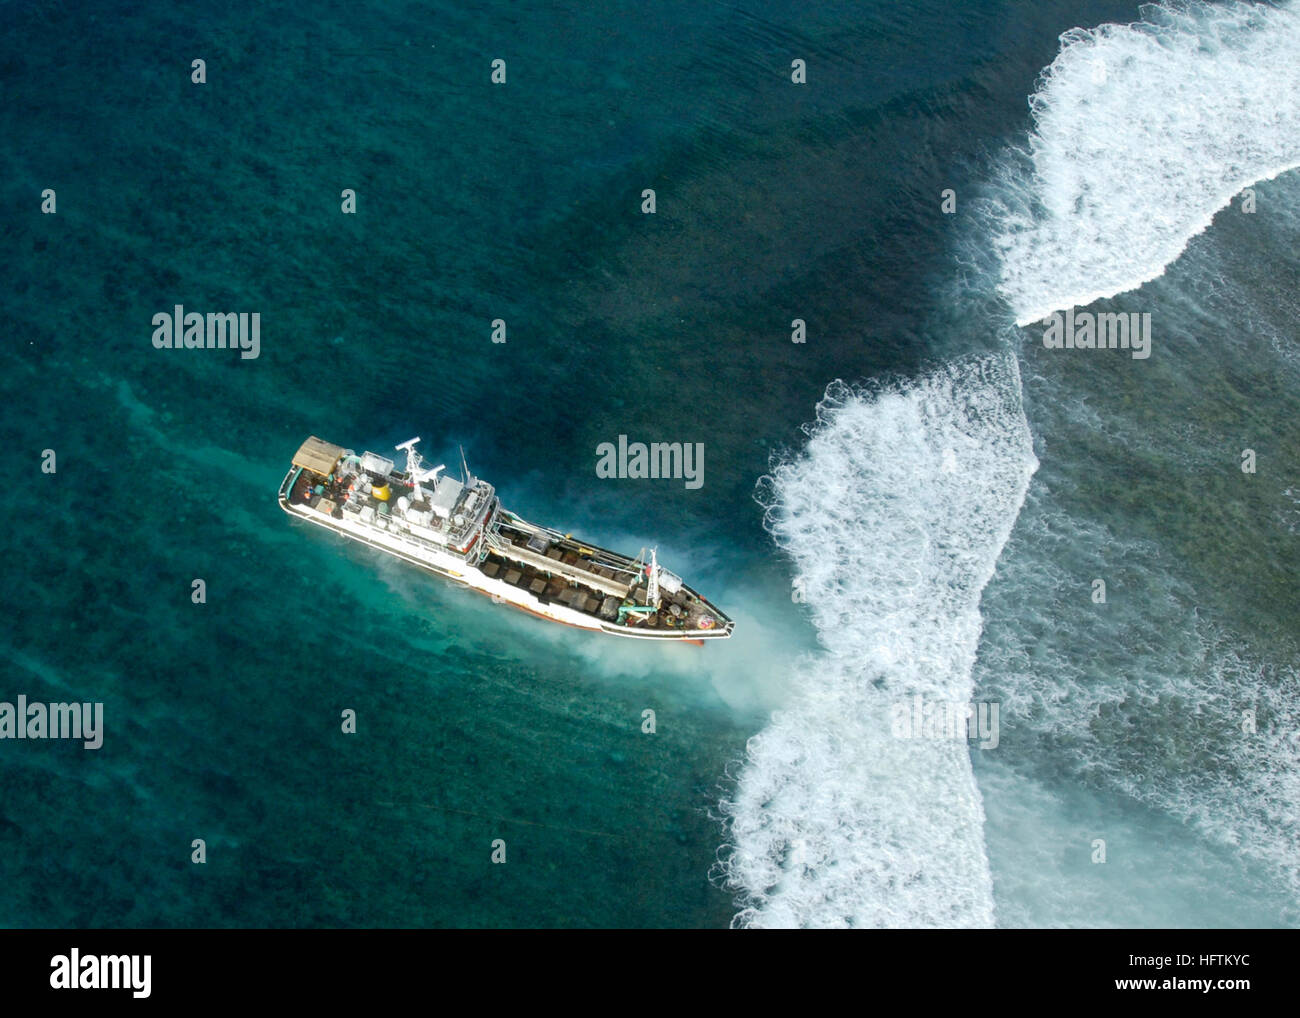 070413-N-4790M-013 ÎLES SALOMON (13 avril 2007) Ð Un navire de pêche  taïwanais est montré coincé sur un récif dans les eaux autour des Îles  Salomon, après que son équipage est secouru la